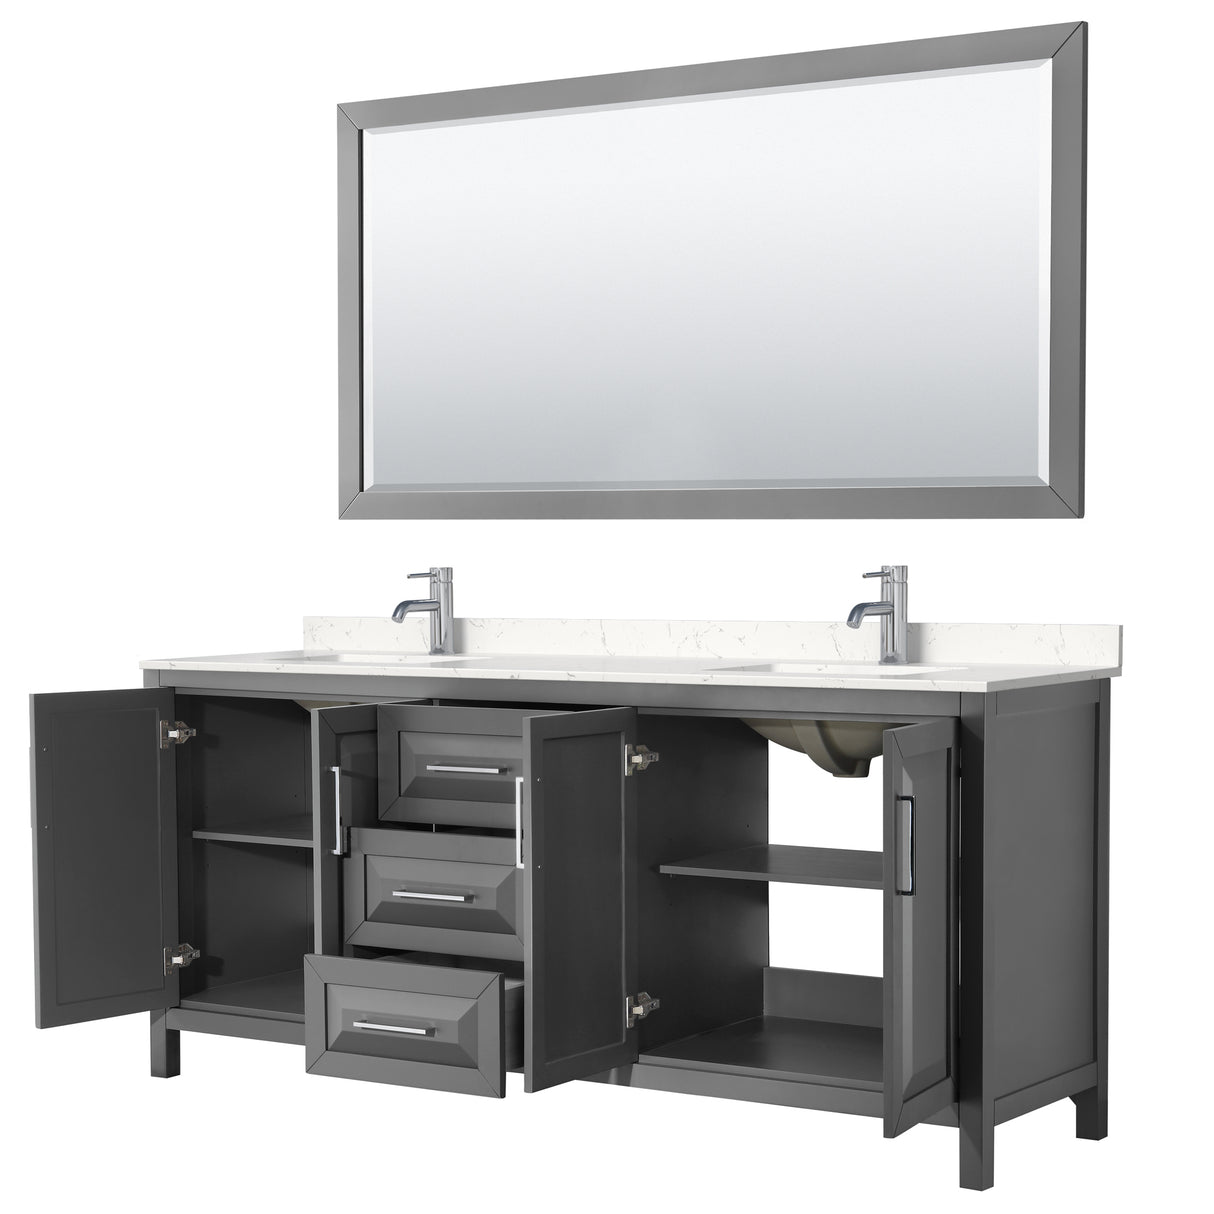 Daria 80 Inch Double Bathroom Vanity in Dark Gray Carrara Cultured Marble Countertop Undermount Square Sinks 70 Inch Mirror